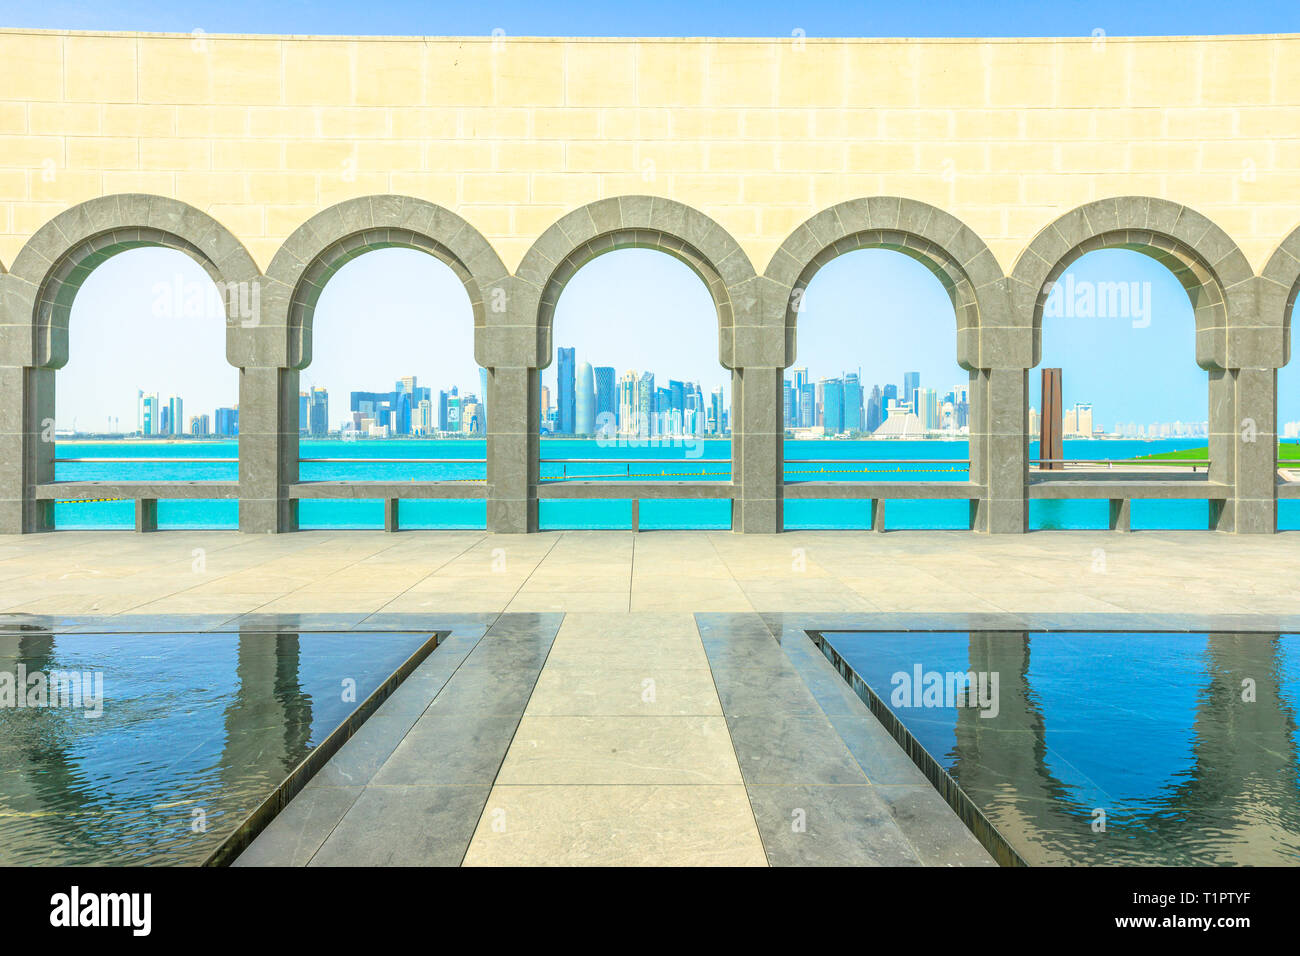 Doha, Katar - Februar 16, 2019: Serie von Bögen Reflexionen in einem Pool Springbrunnen im Museum für Islamische Kunst beliebte Strandpromenade. Naher Osten Stockfoto